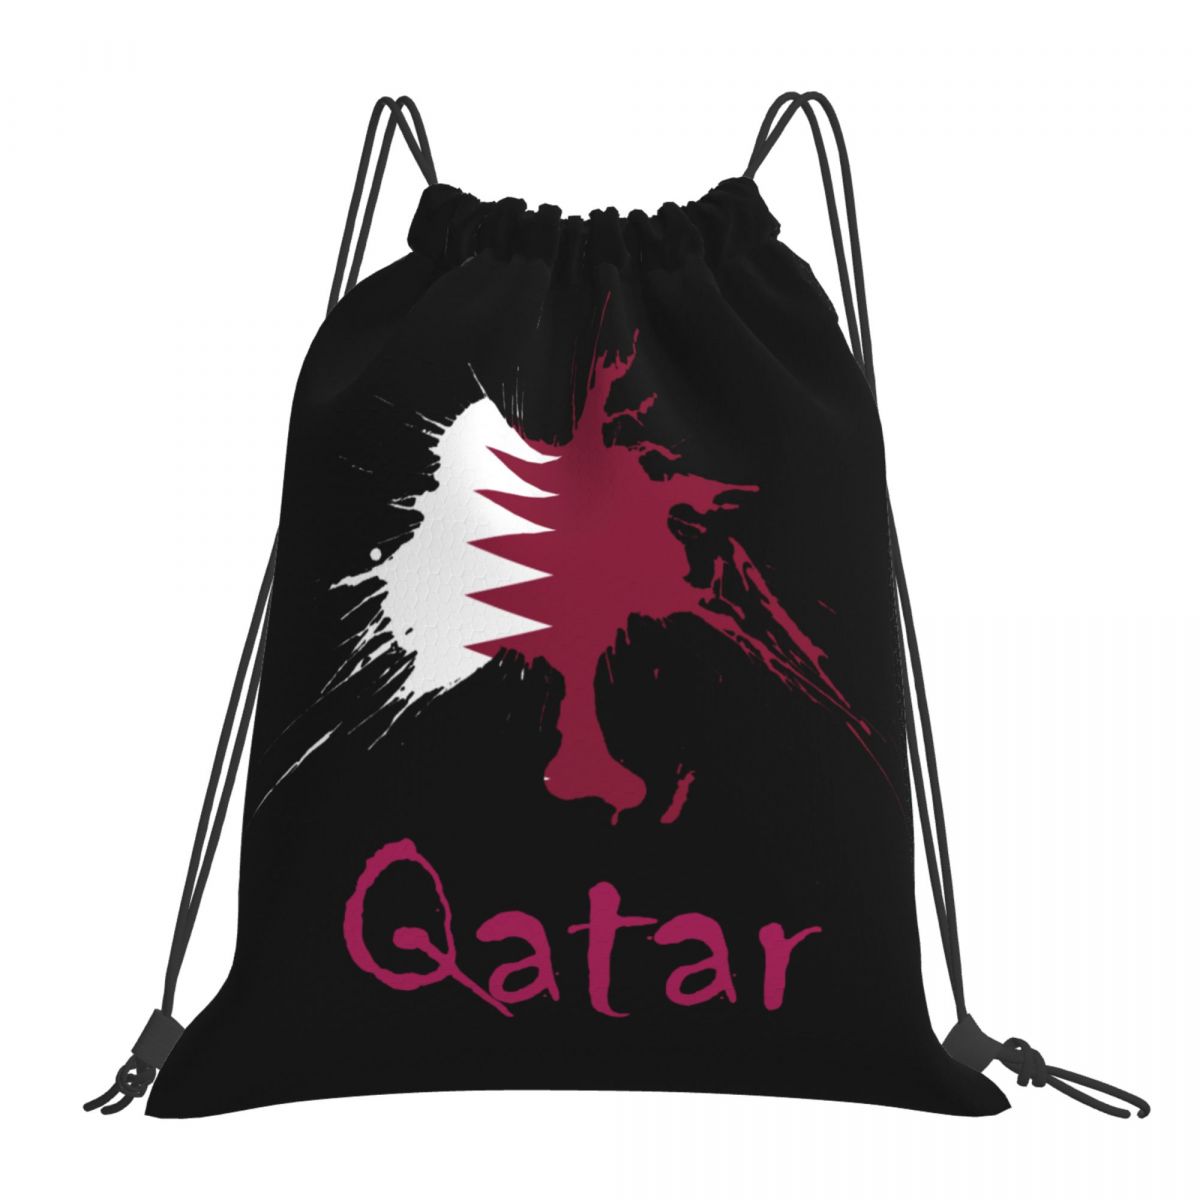 Qatar Ink Spatter Unisex Drawstring Backpack Bag Travel Sackpack